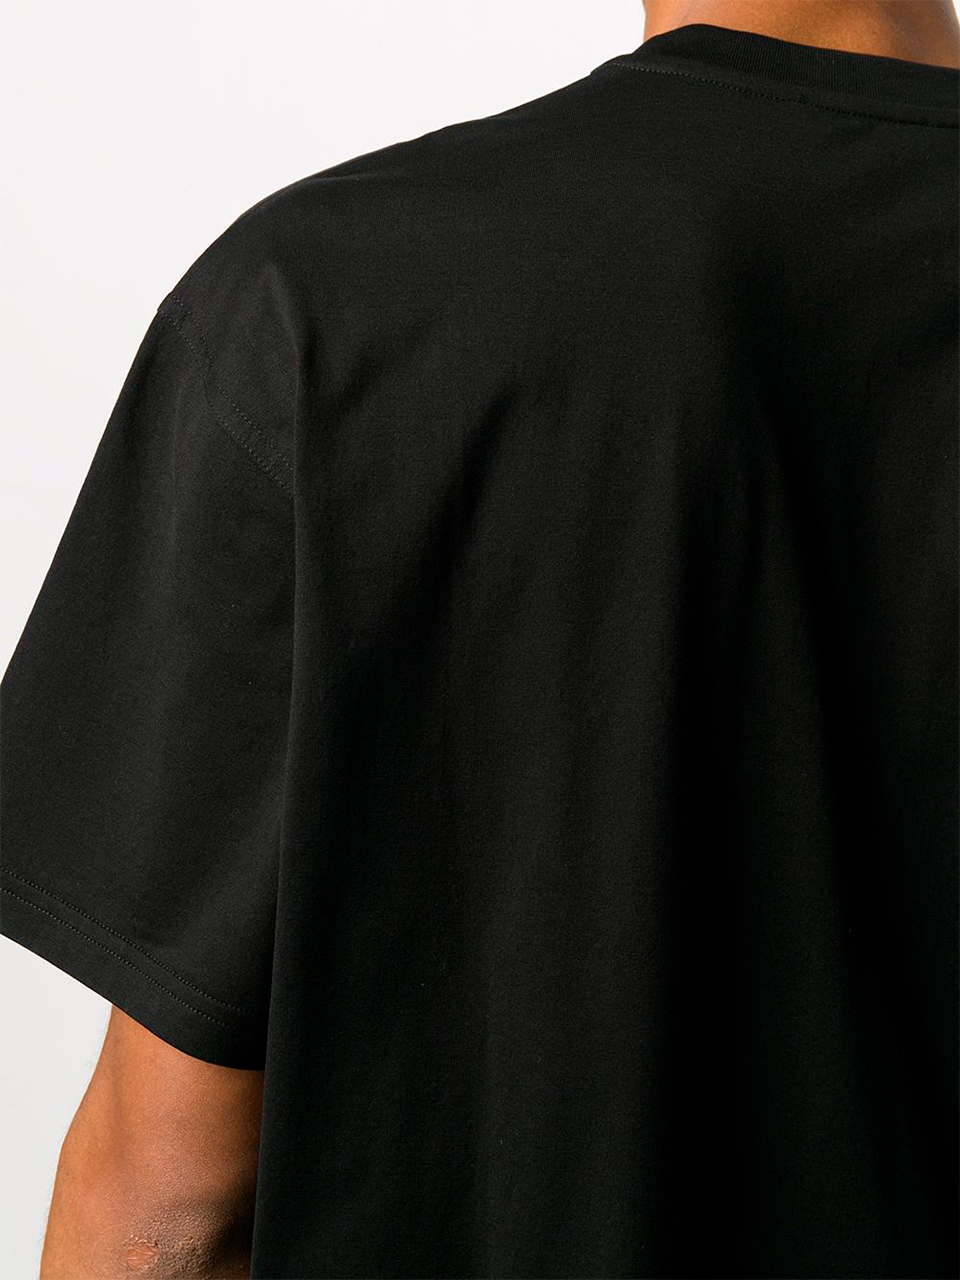 Imagem de: Camiseta Givenchy Preta com Logo Abstrato